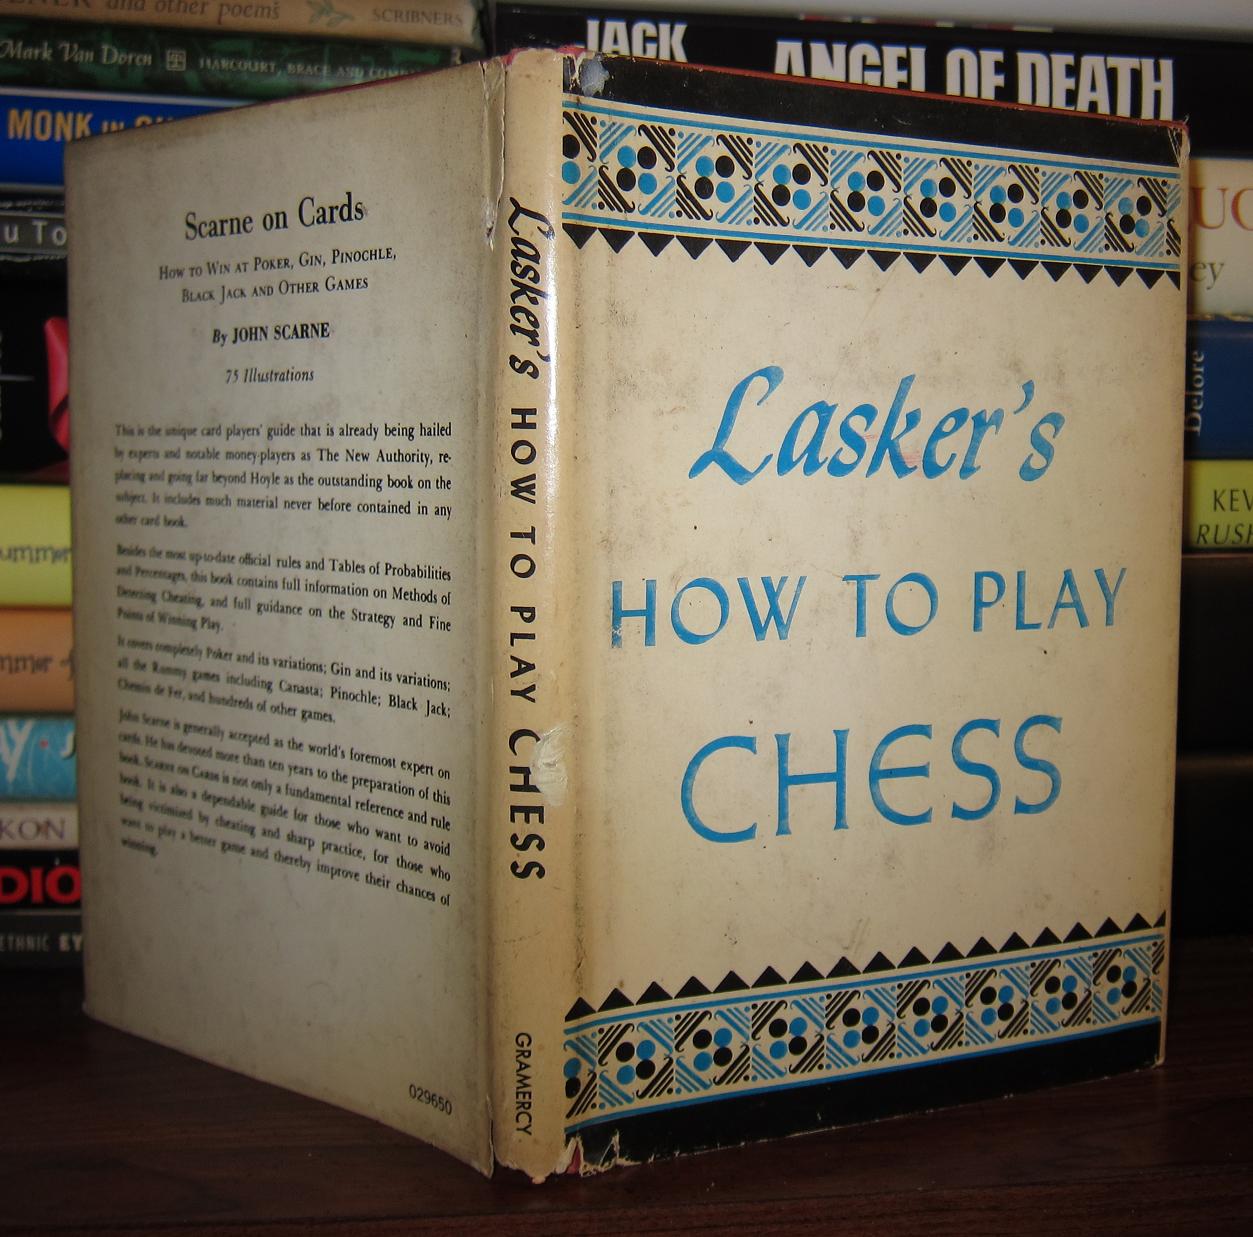 Chess Graphics : Emanuel Lasker